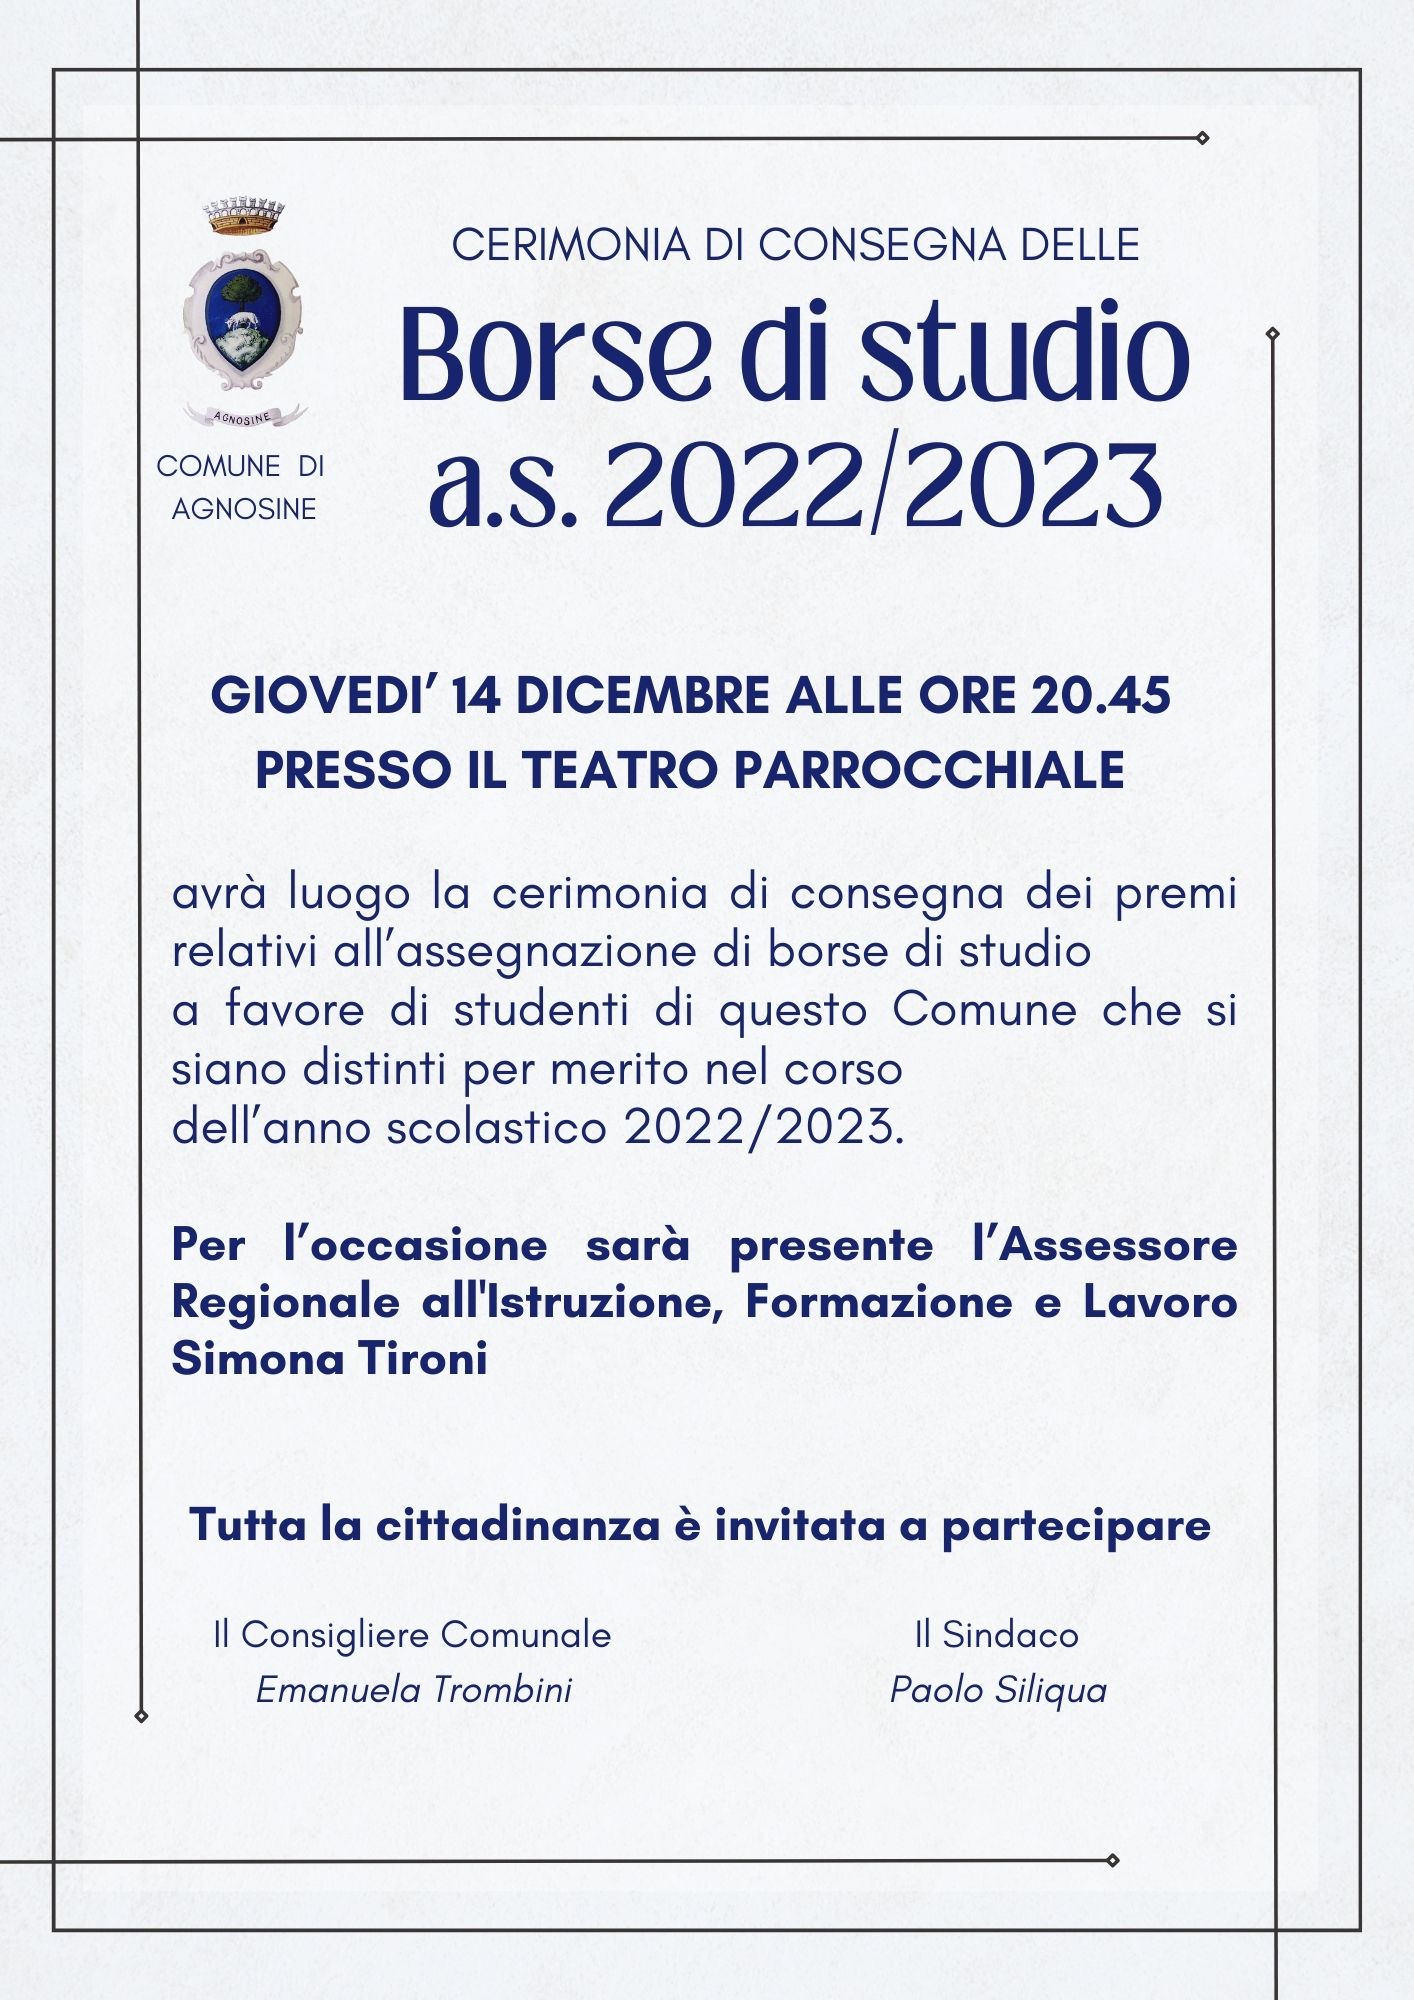 CERIMONIA DI CONSEGNE DELLE BORSE DI STUDIO ANNO SCOLASTICO 2022/2023